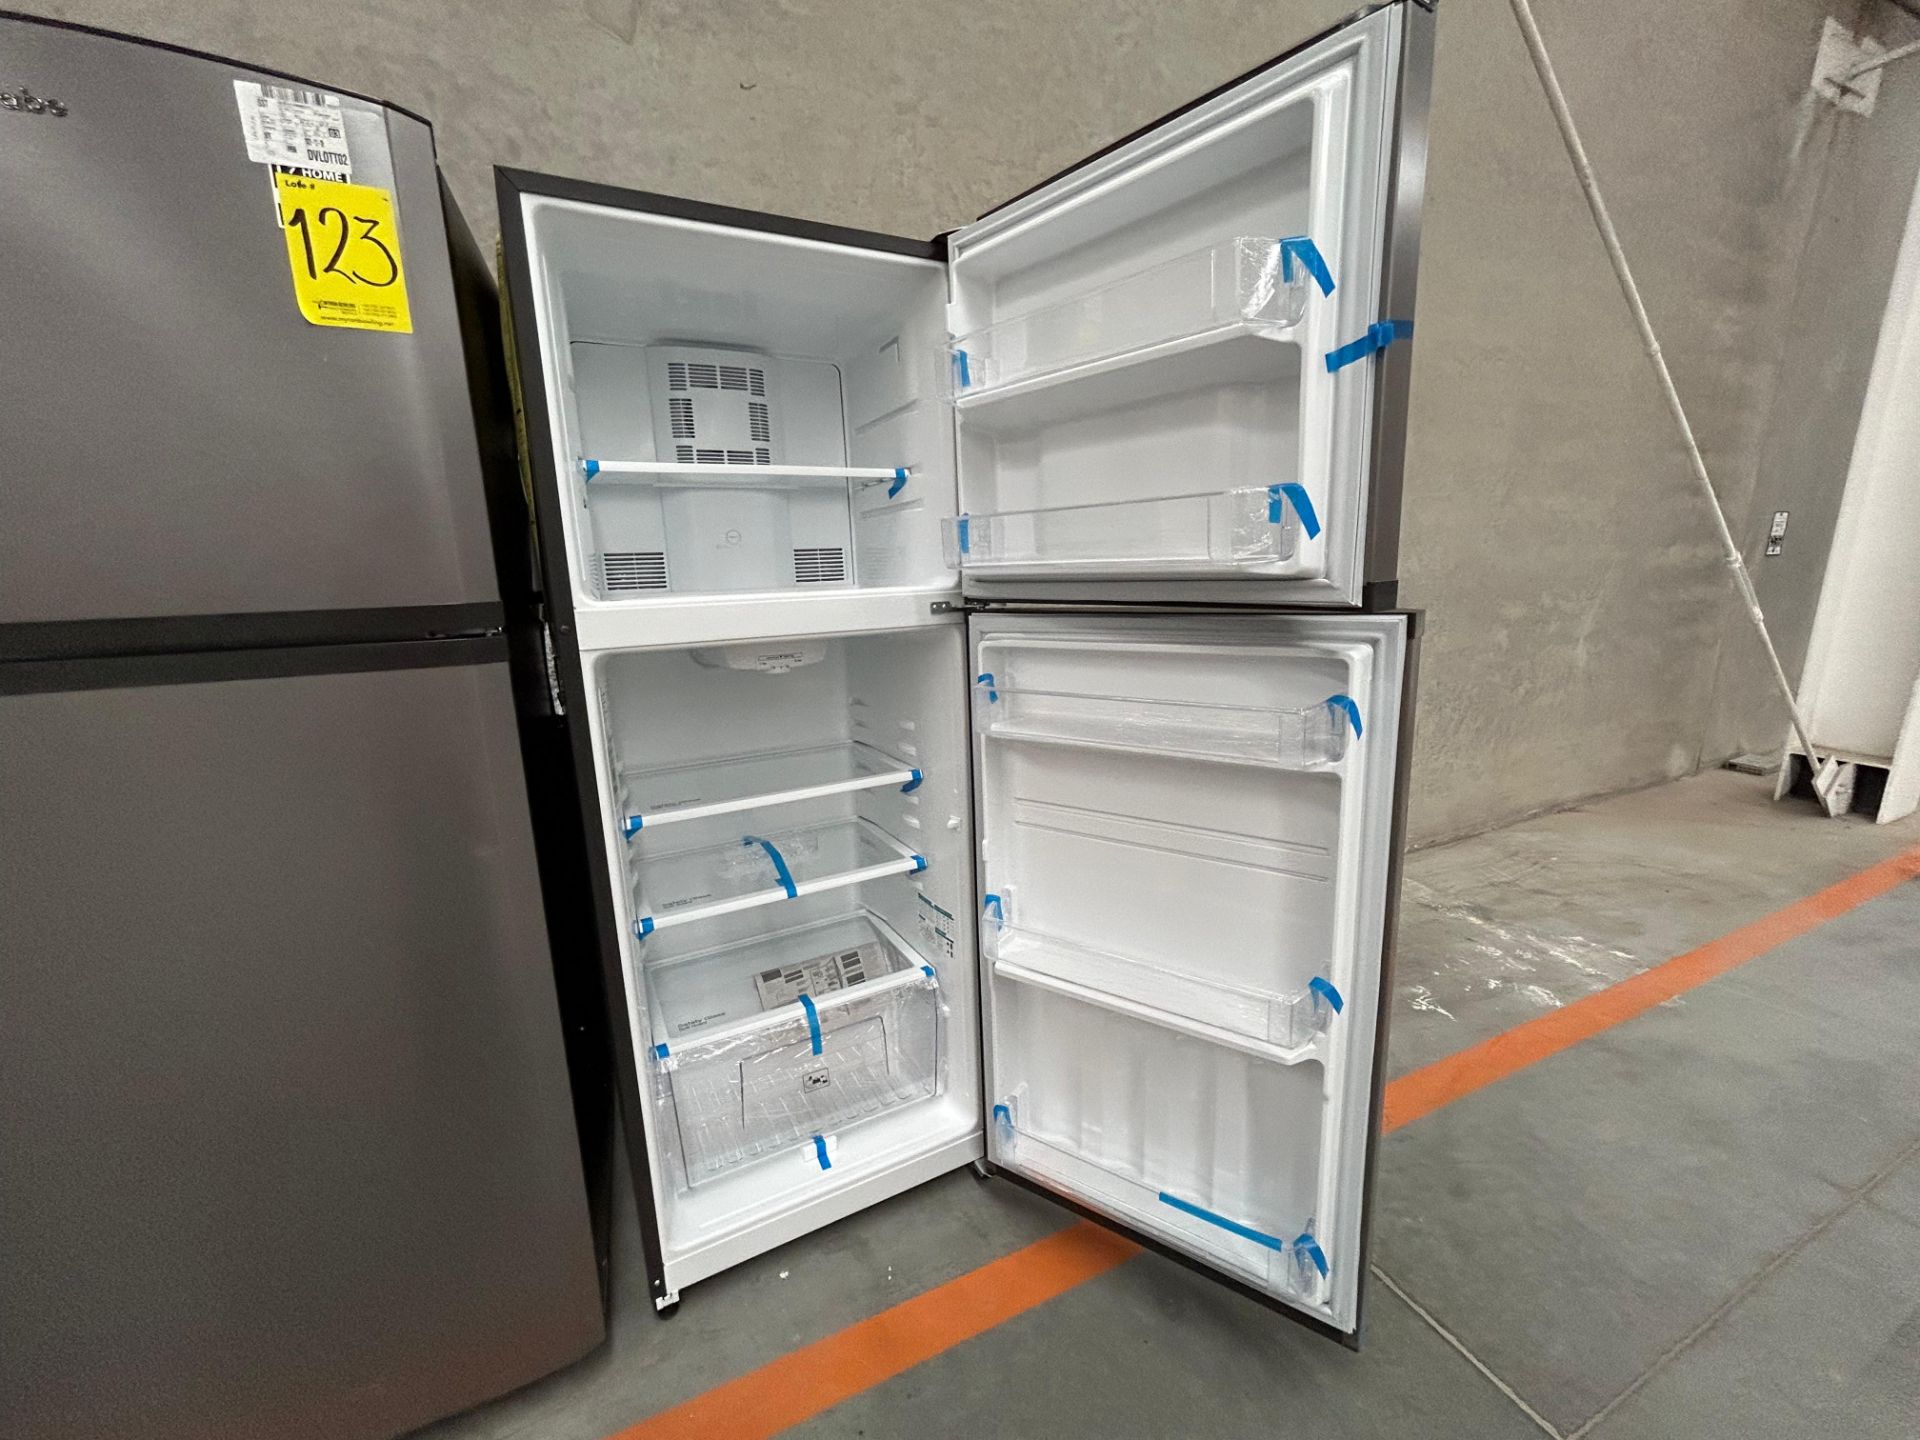 Lote de 2 Refrigeradores contiene: 1 Refrigerador Marca MABE, Modelo RME360PVMRM0, Serie 21969, Col - Image 5 of 15